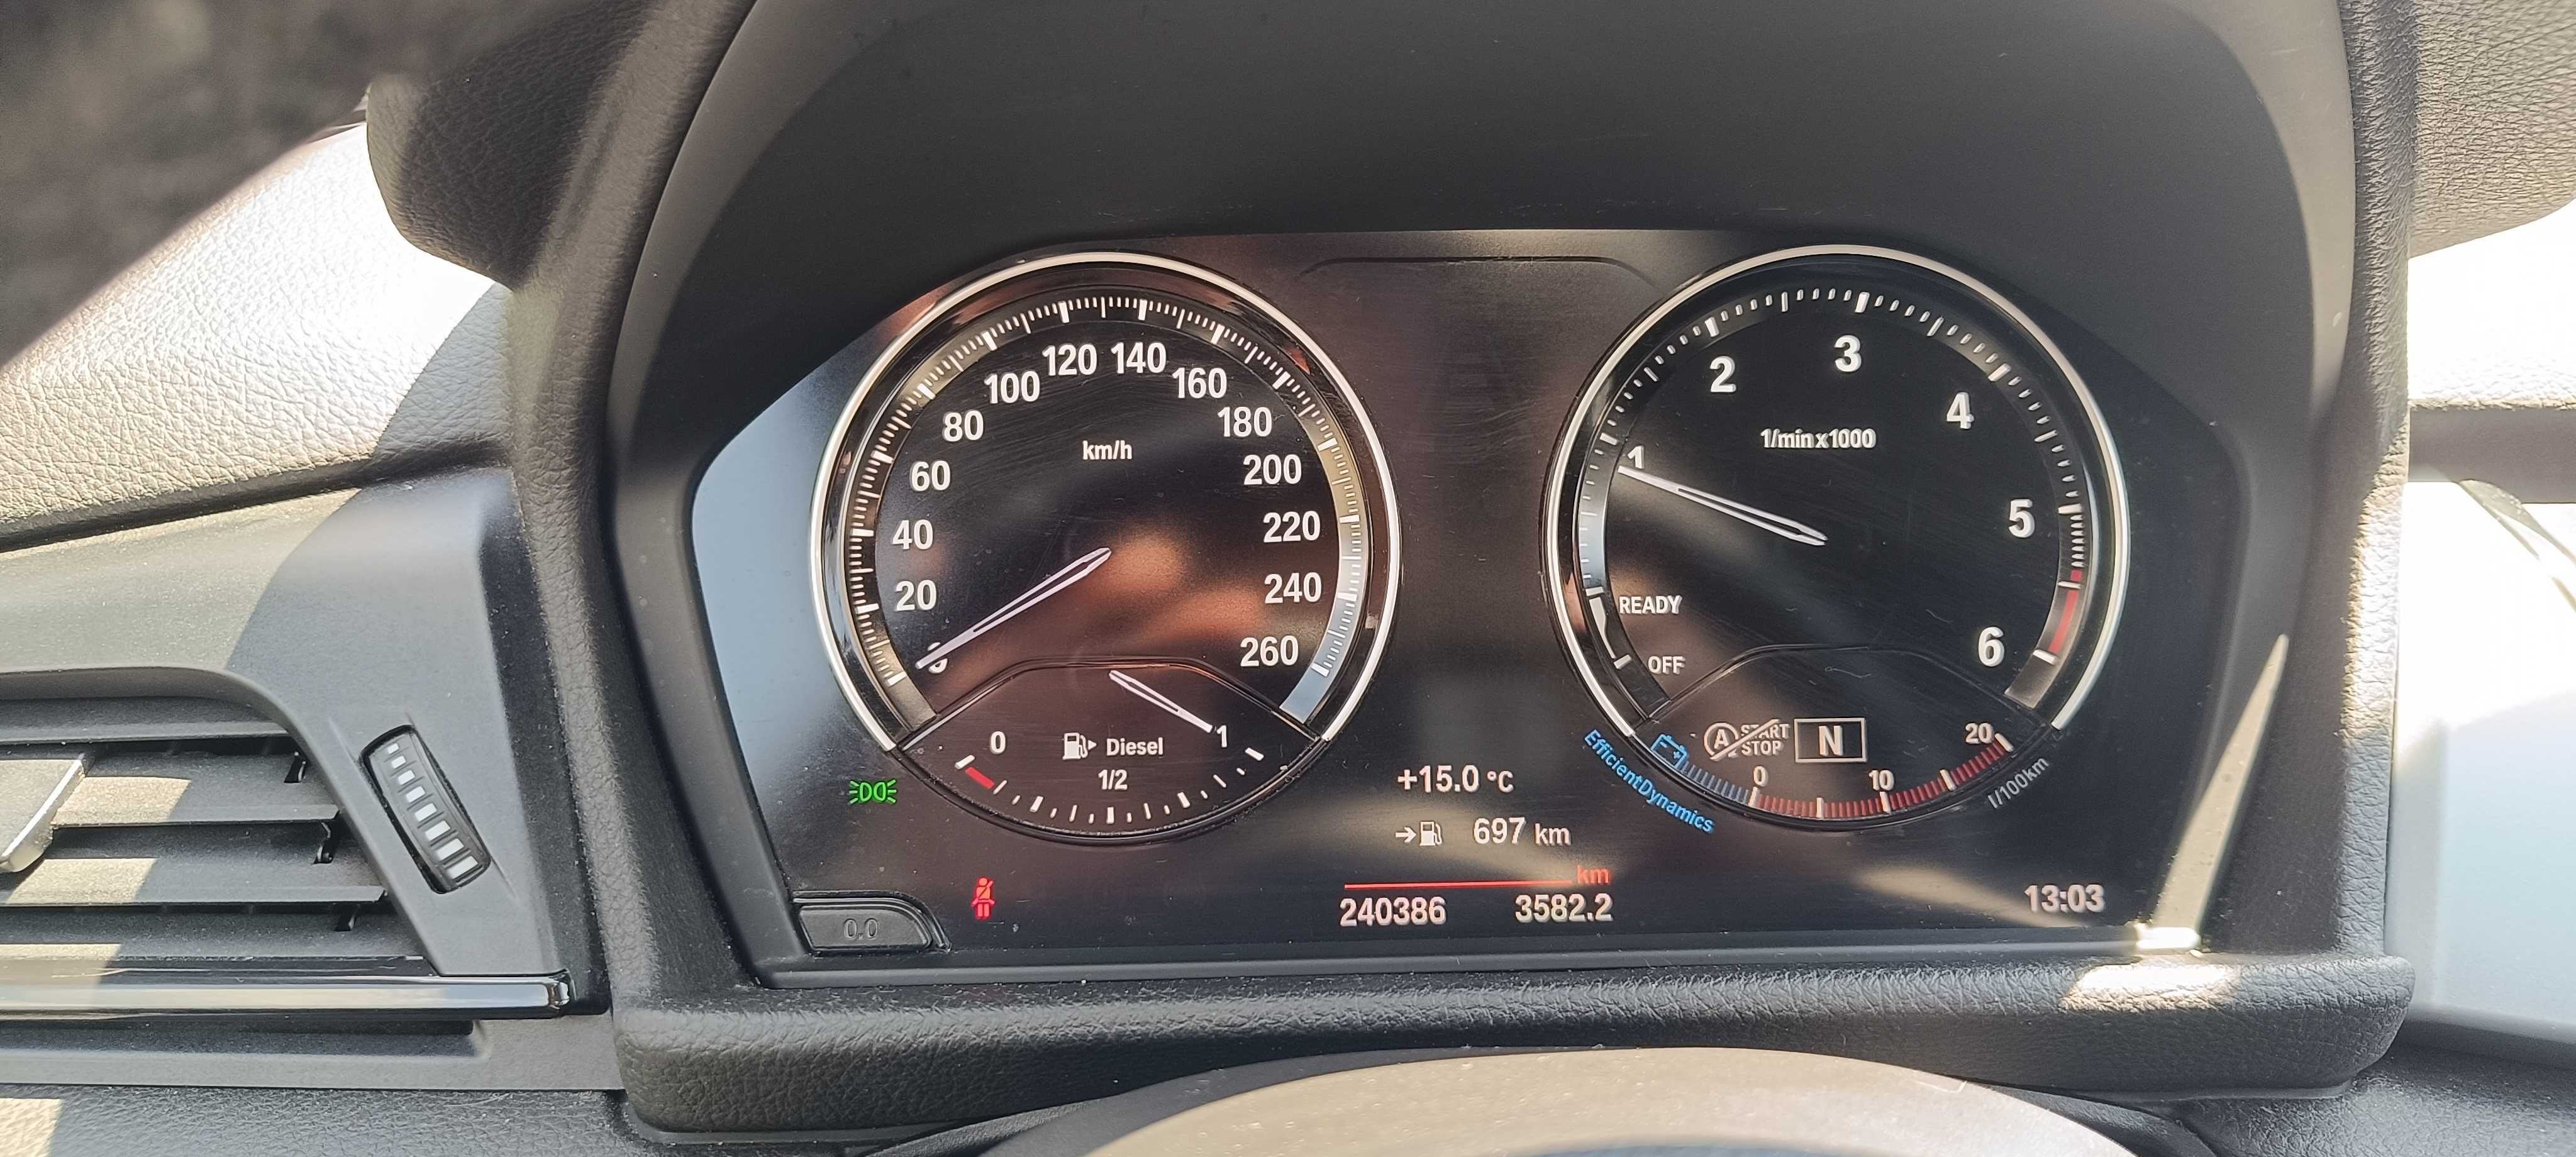 BMW seria 2 Gran Tourer /7 locuri ~ 216d /an 2018 1.5 diesel